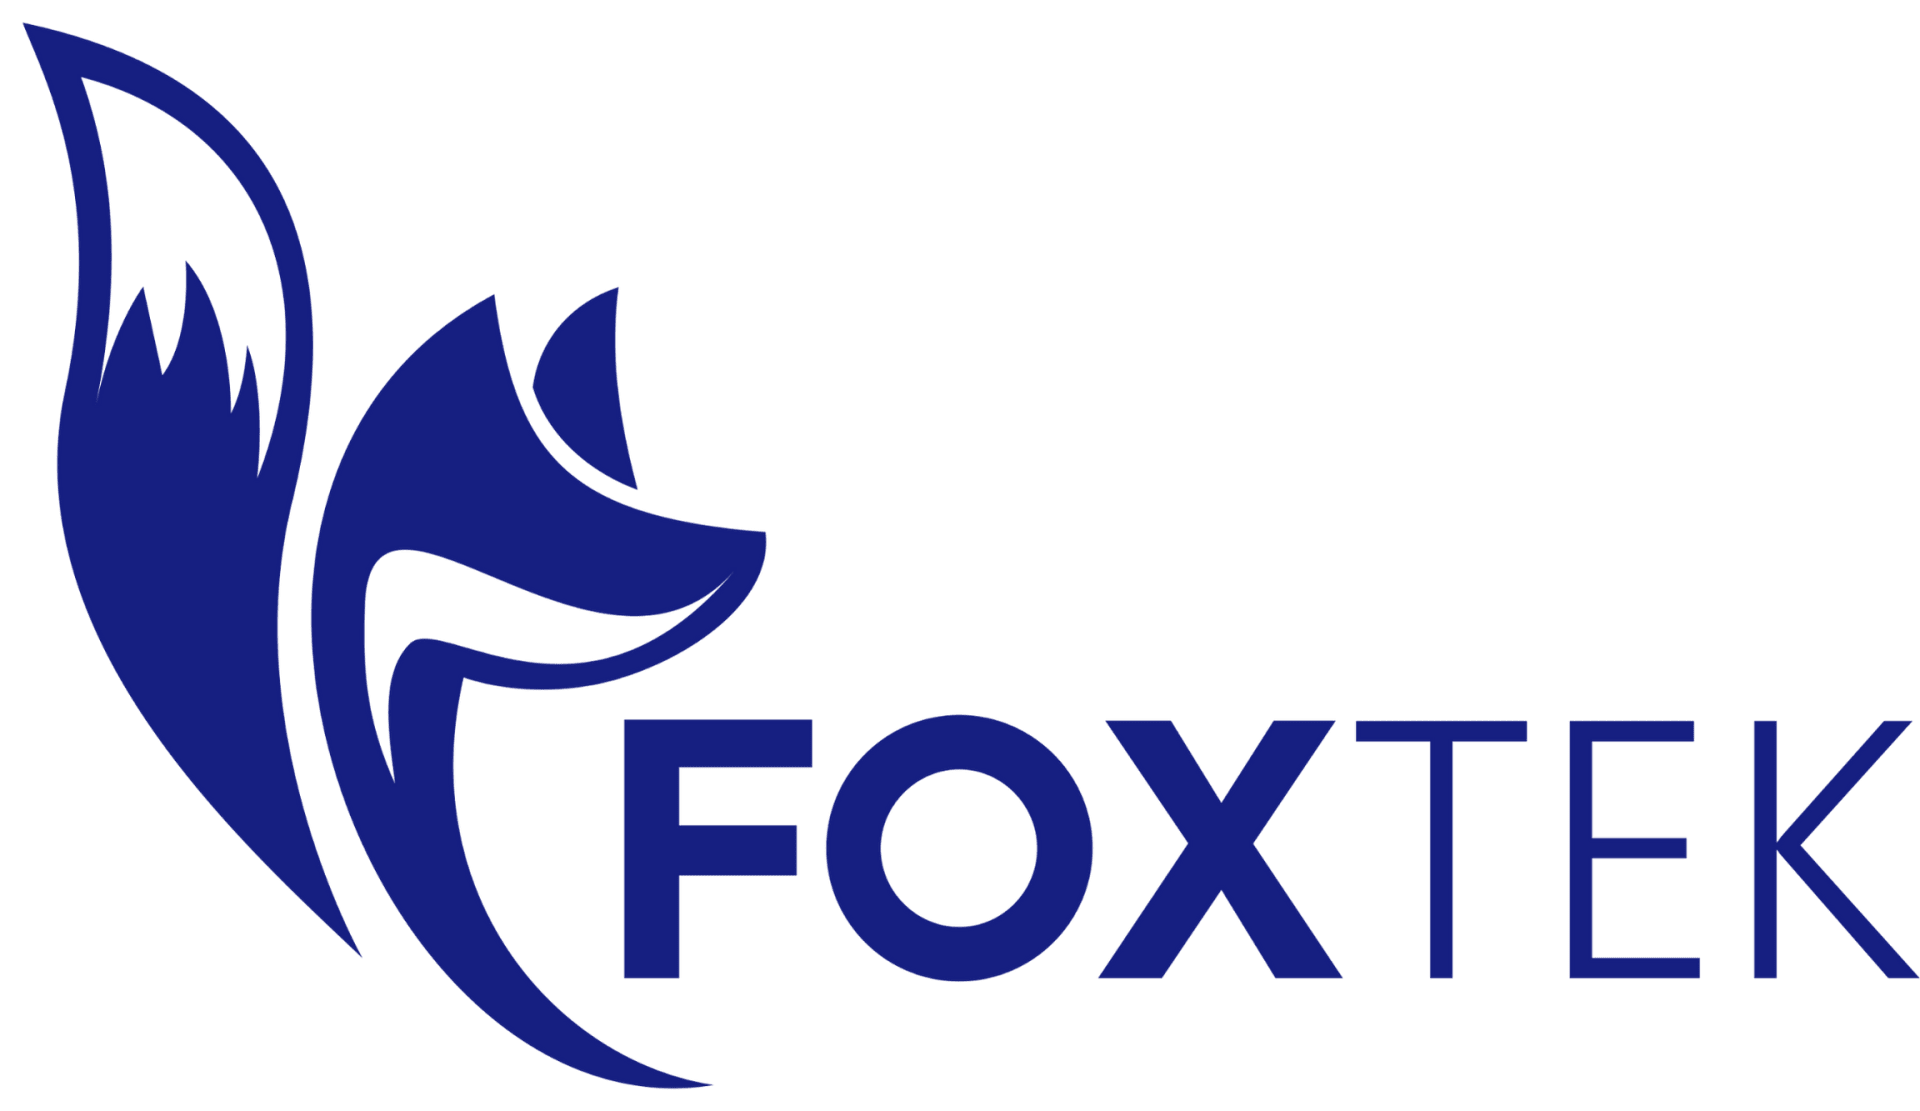 Foxtek logo